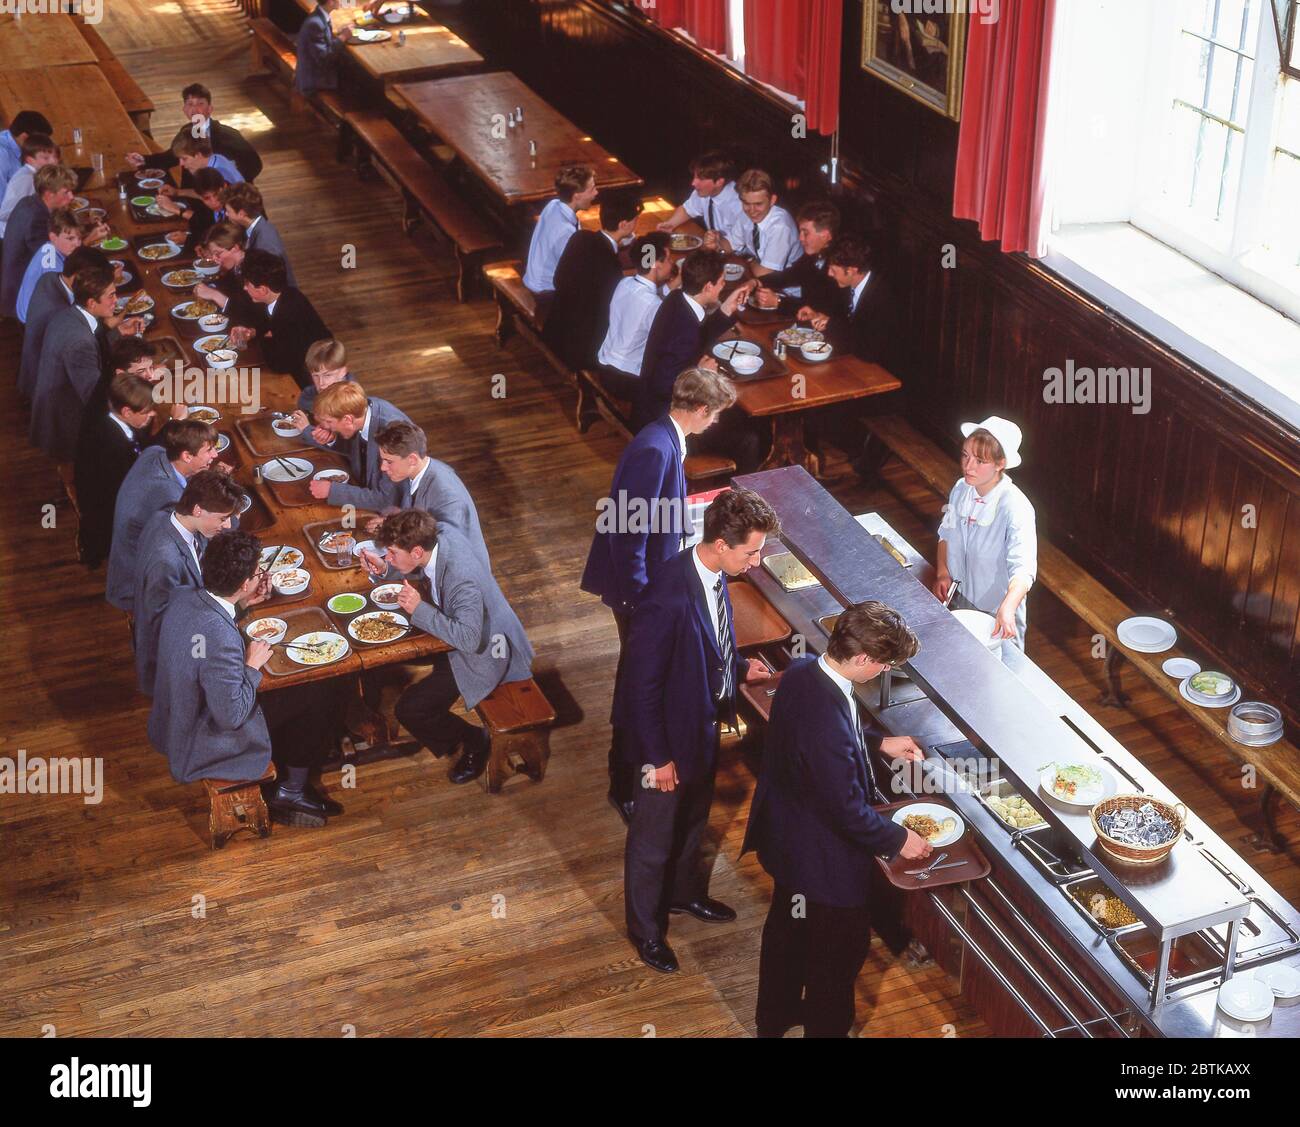 Garçons déjeunant dans la salle à manger de l'école, Surrey, Angleterre, Royaume-Uni Banque D'Images